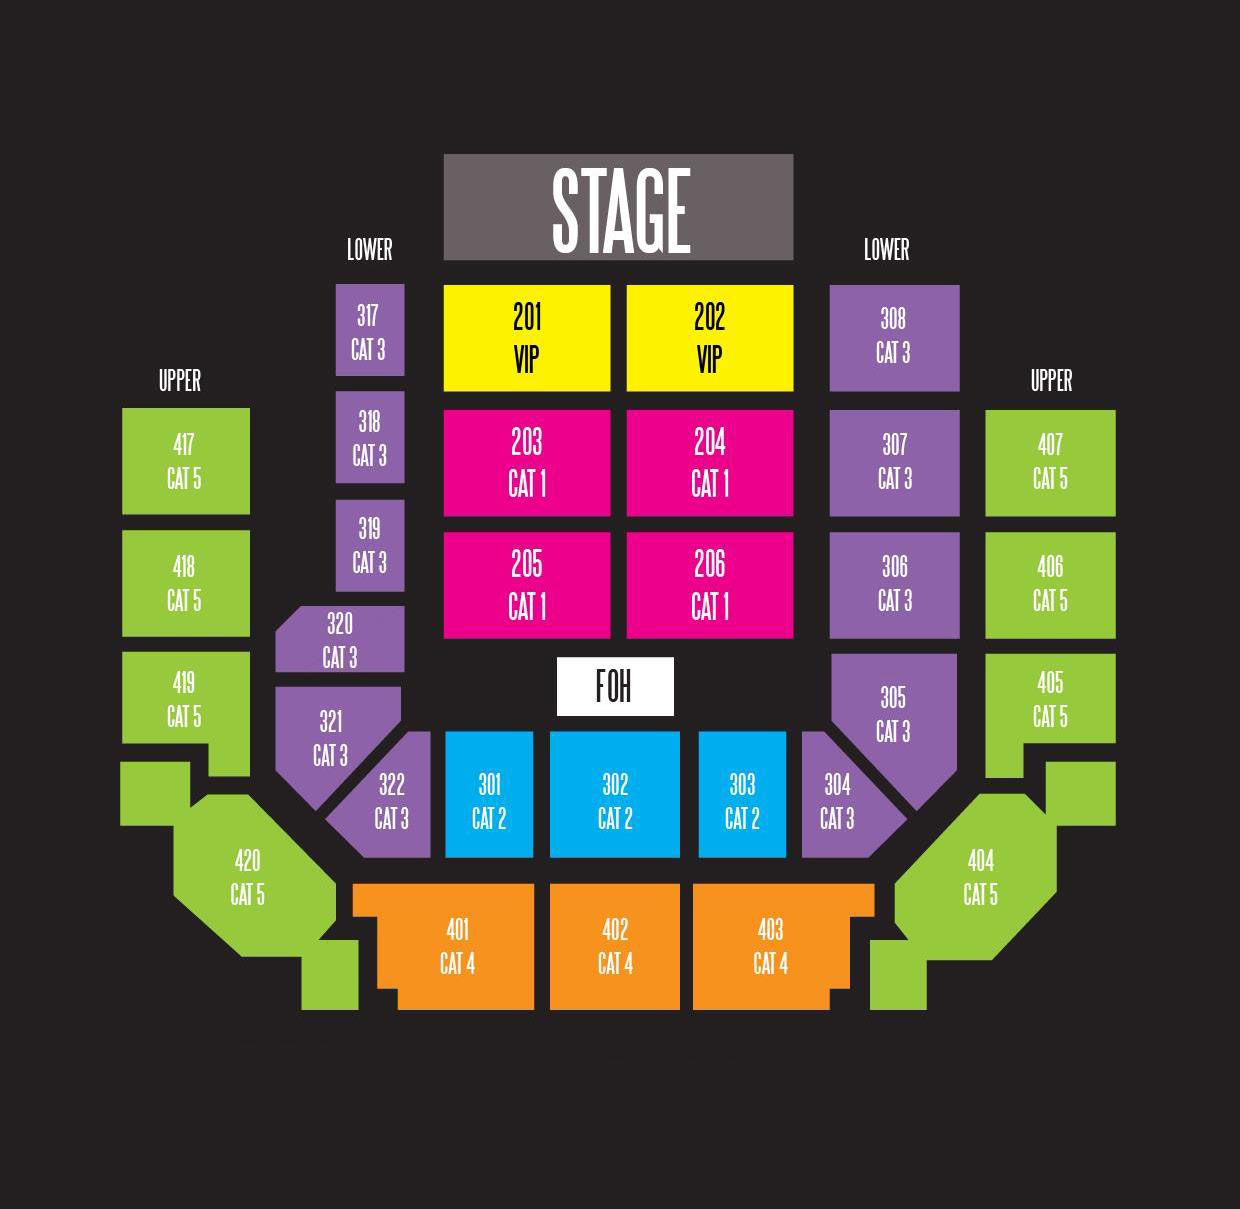 Axiata Arena Seating Plan1 